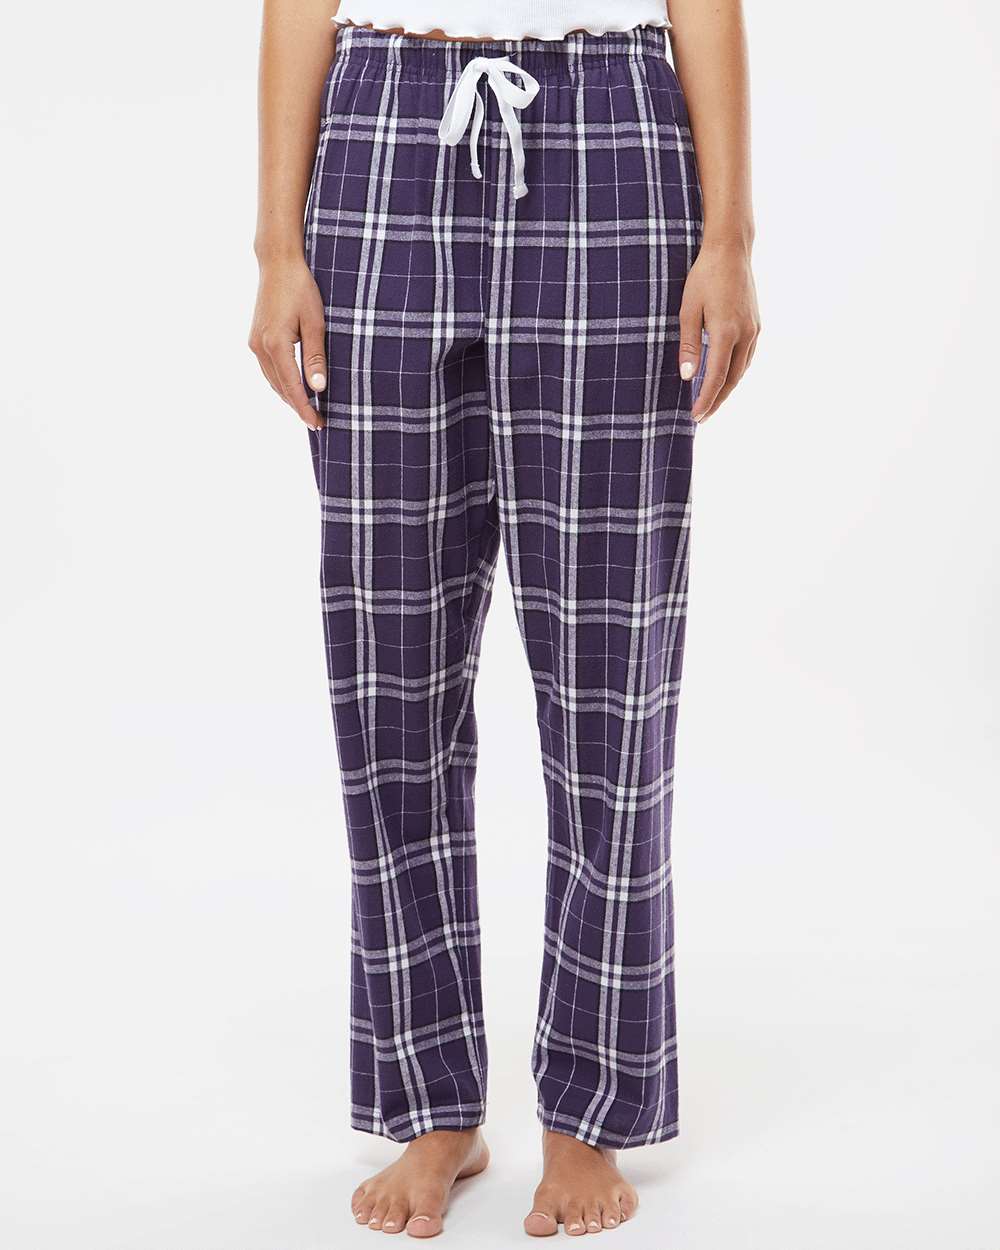 Boxercraft Women's Haley Charcoal/Lavender Plaid Flannel Pajama